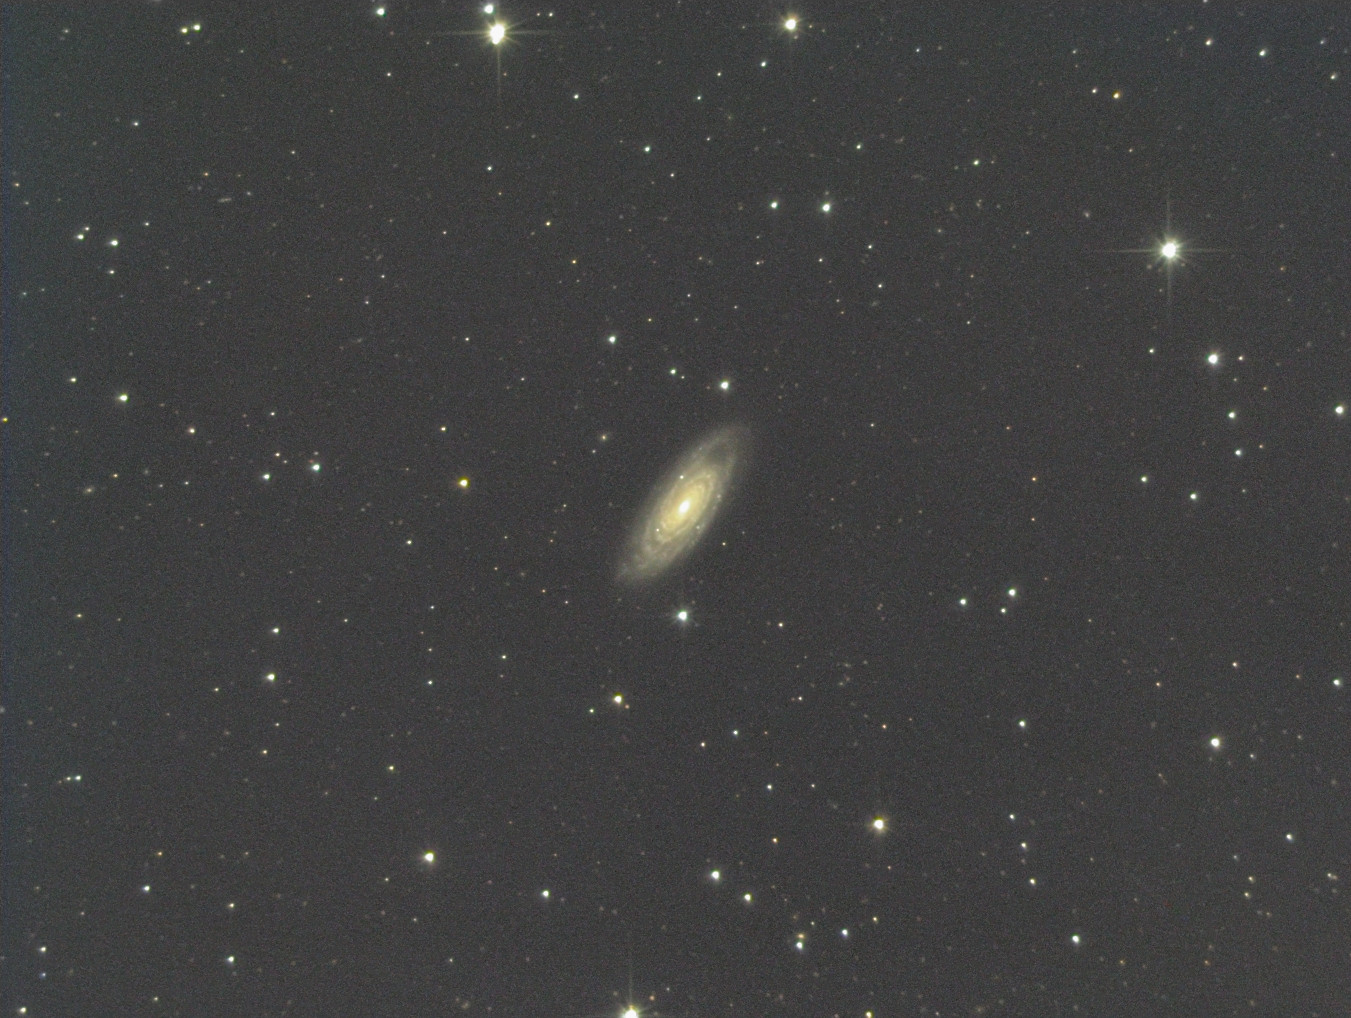 NGC 7606